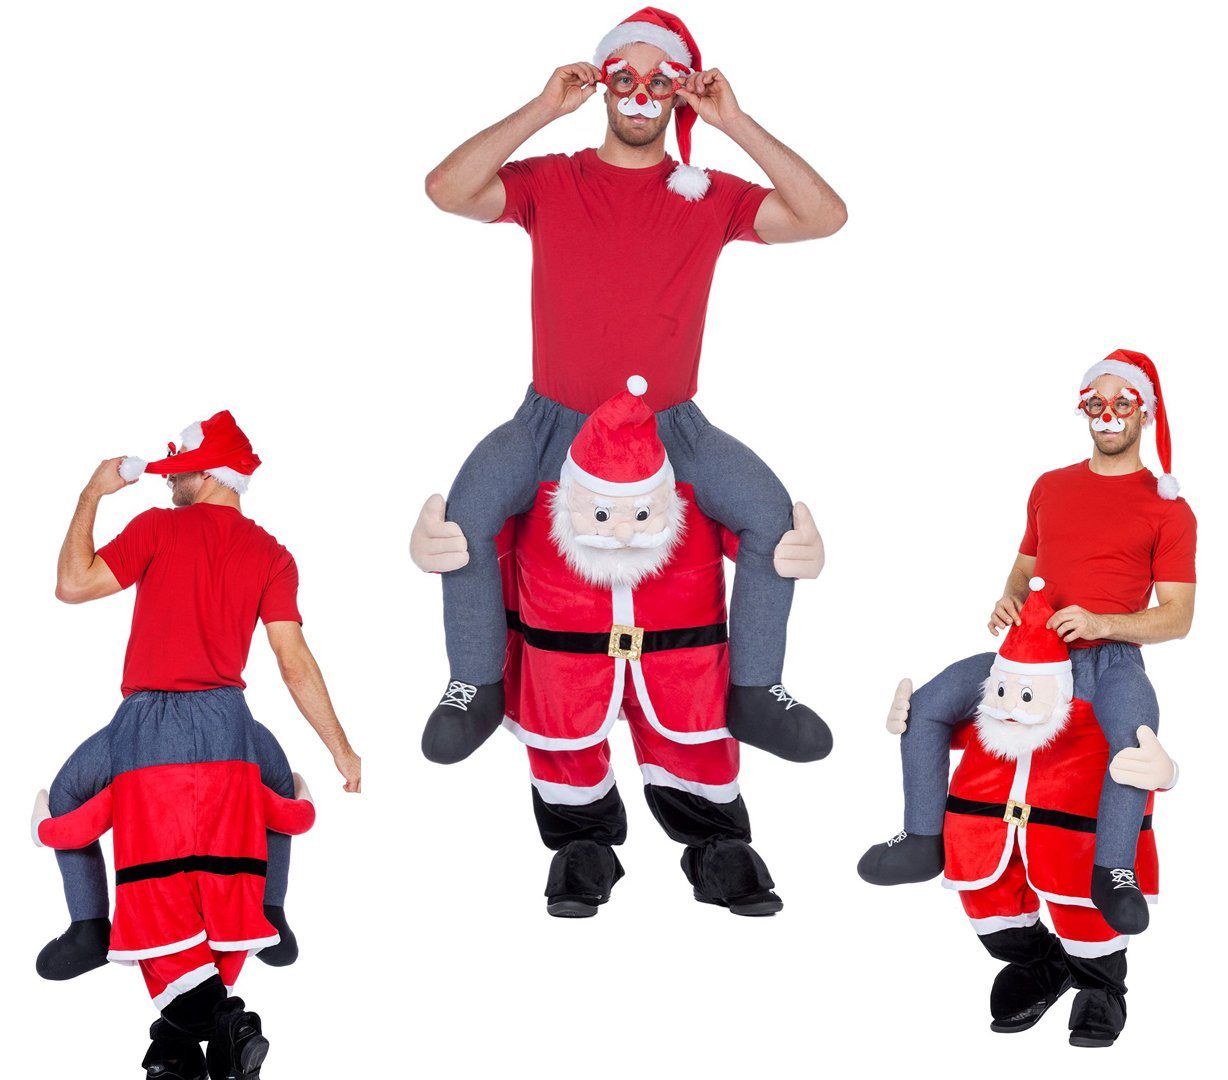 Wilbers Weihnachtsmann Huckepack Kostüm - Mann auf Weihnachtsmann - Wilbers Gr. M/L - Hucke Pack, Weihnachtsmannkostüm, Weihnachtskostüm, Weihnachtsmann, Huckepack Kostüm